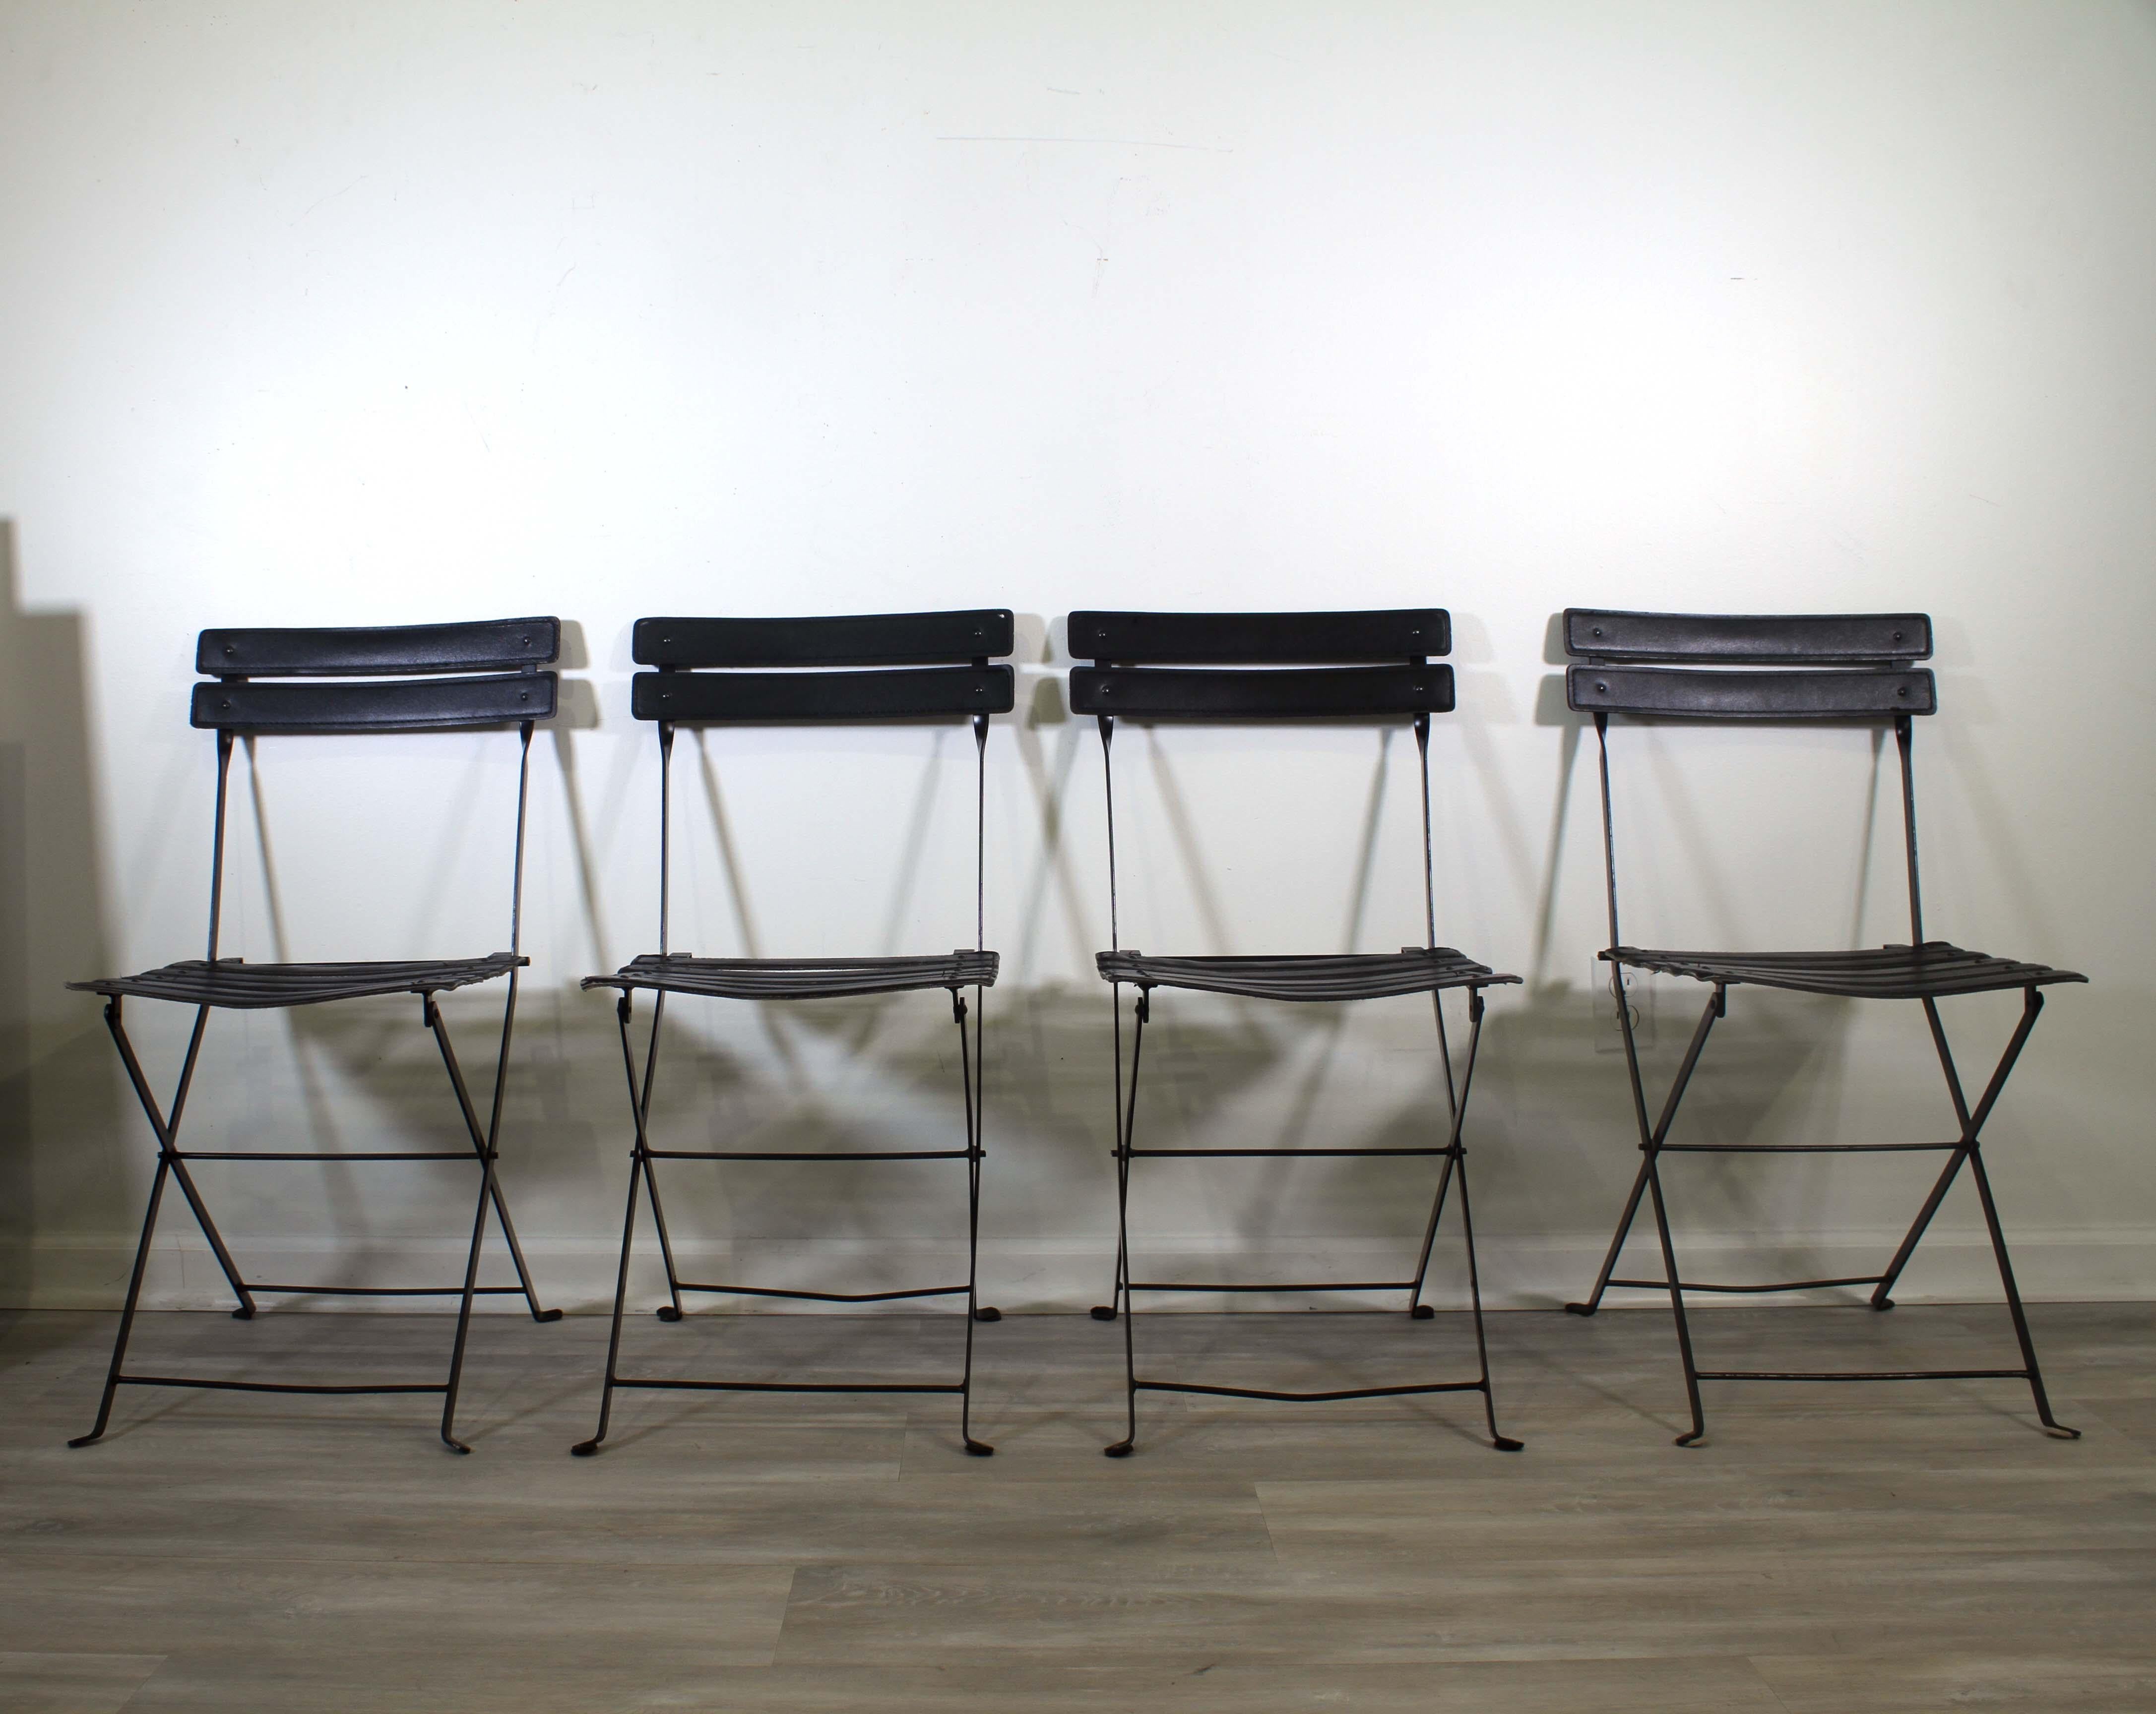 Un ensemble iconique de 4 chaises pliantes avec une structure en acier noir avec un bandeau en cuir noir par Marco Zanuso pour Zanotta Celestina. Italie Années 1970. Une fantastique interprétation moderne de la chaise pliante, sophistiquée et